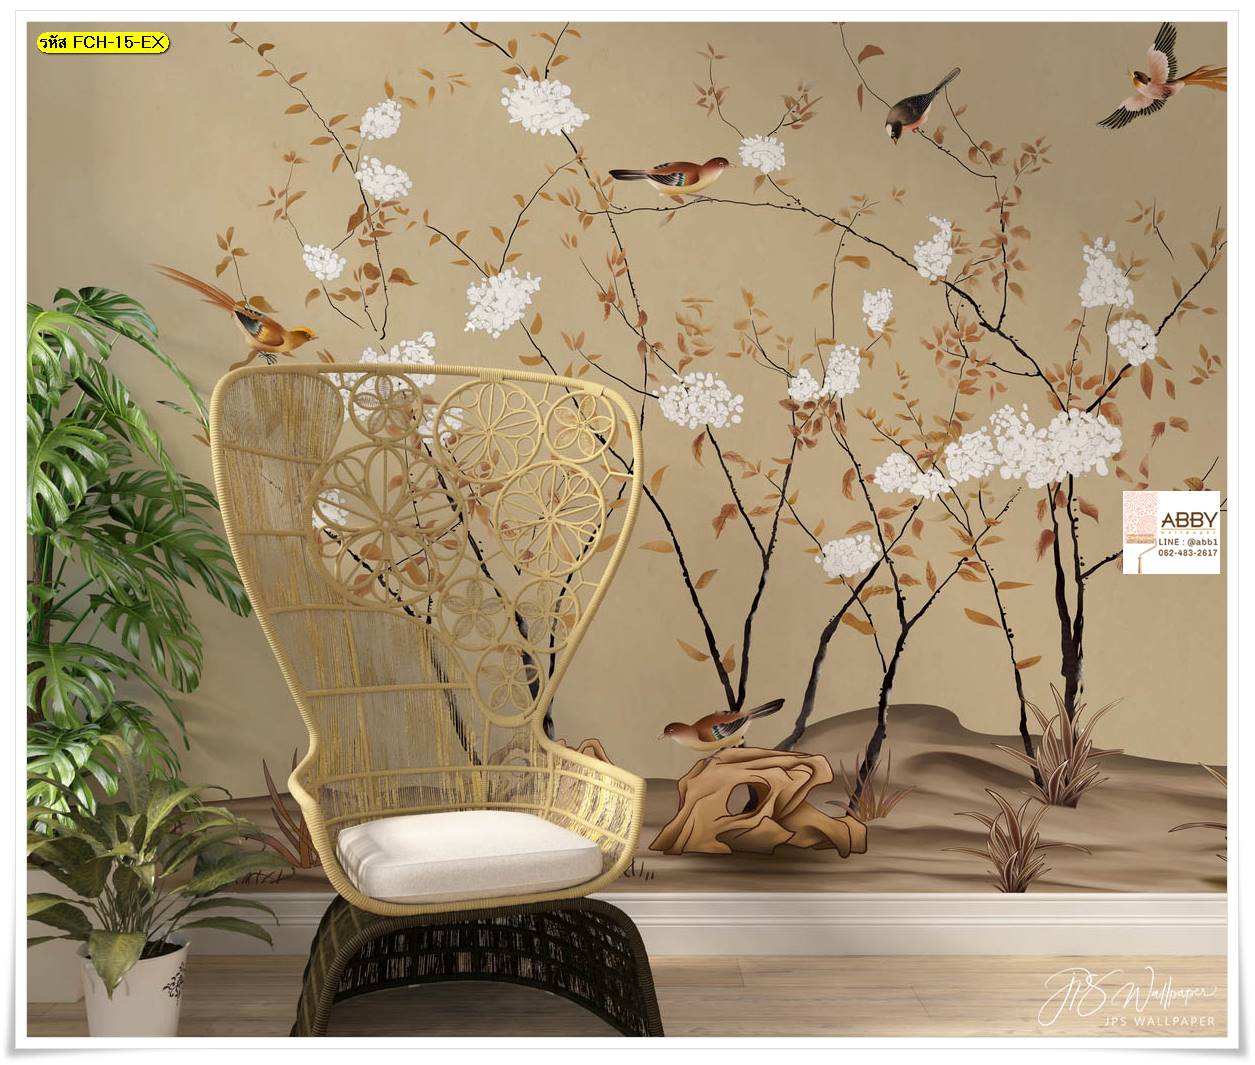 Wallpaperแต่งห้องลายดอกไม้จีน